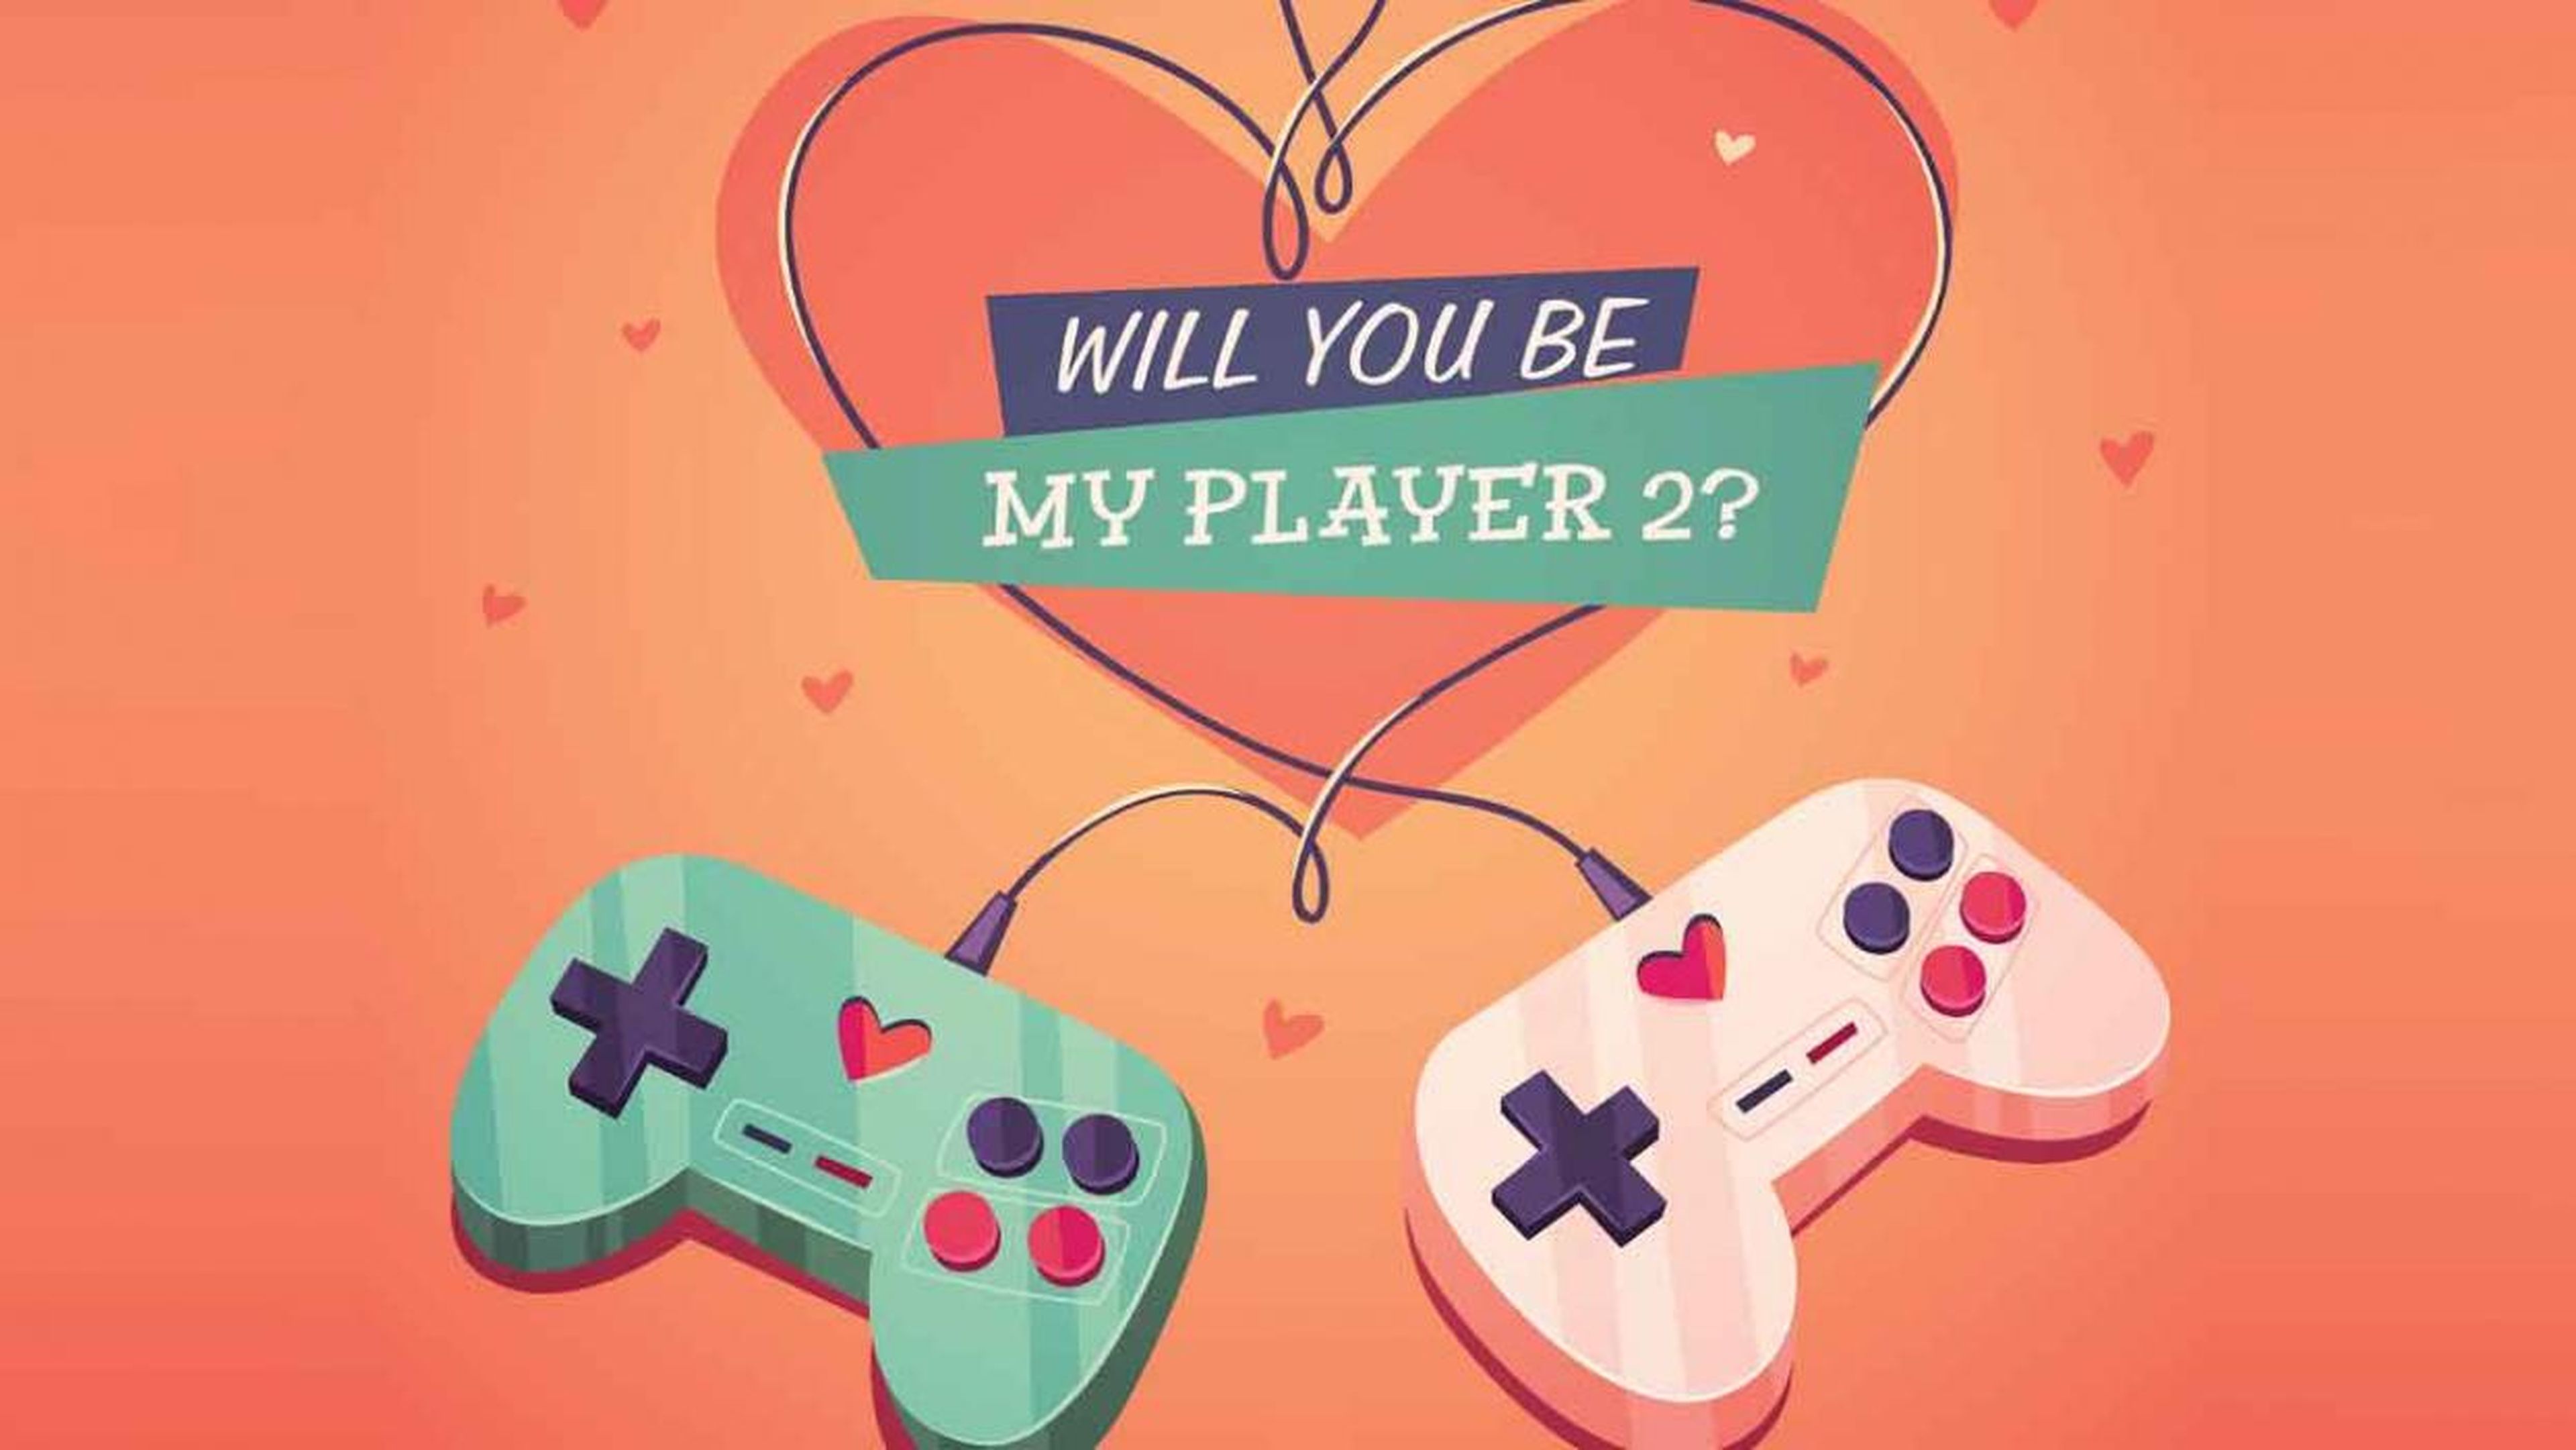 Imágenes sobre videojuegos para felicitar San Valentín 2019